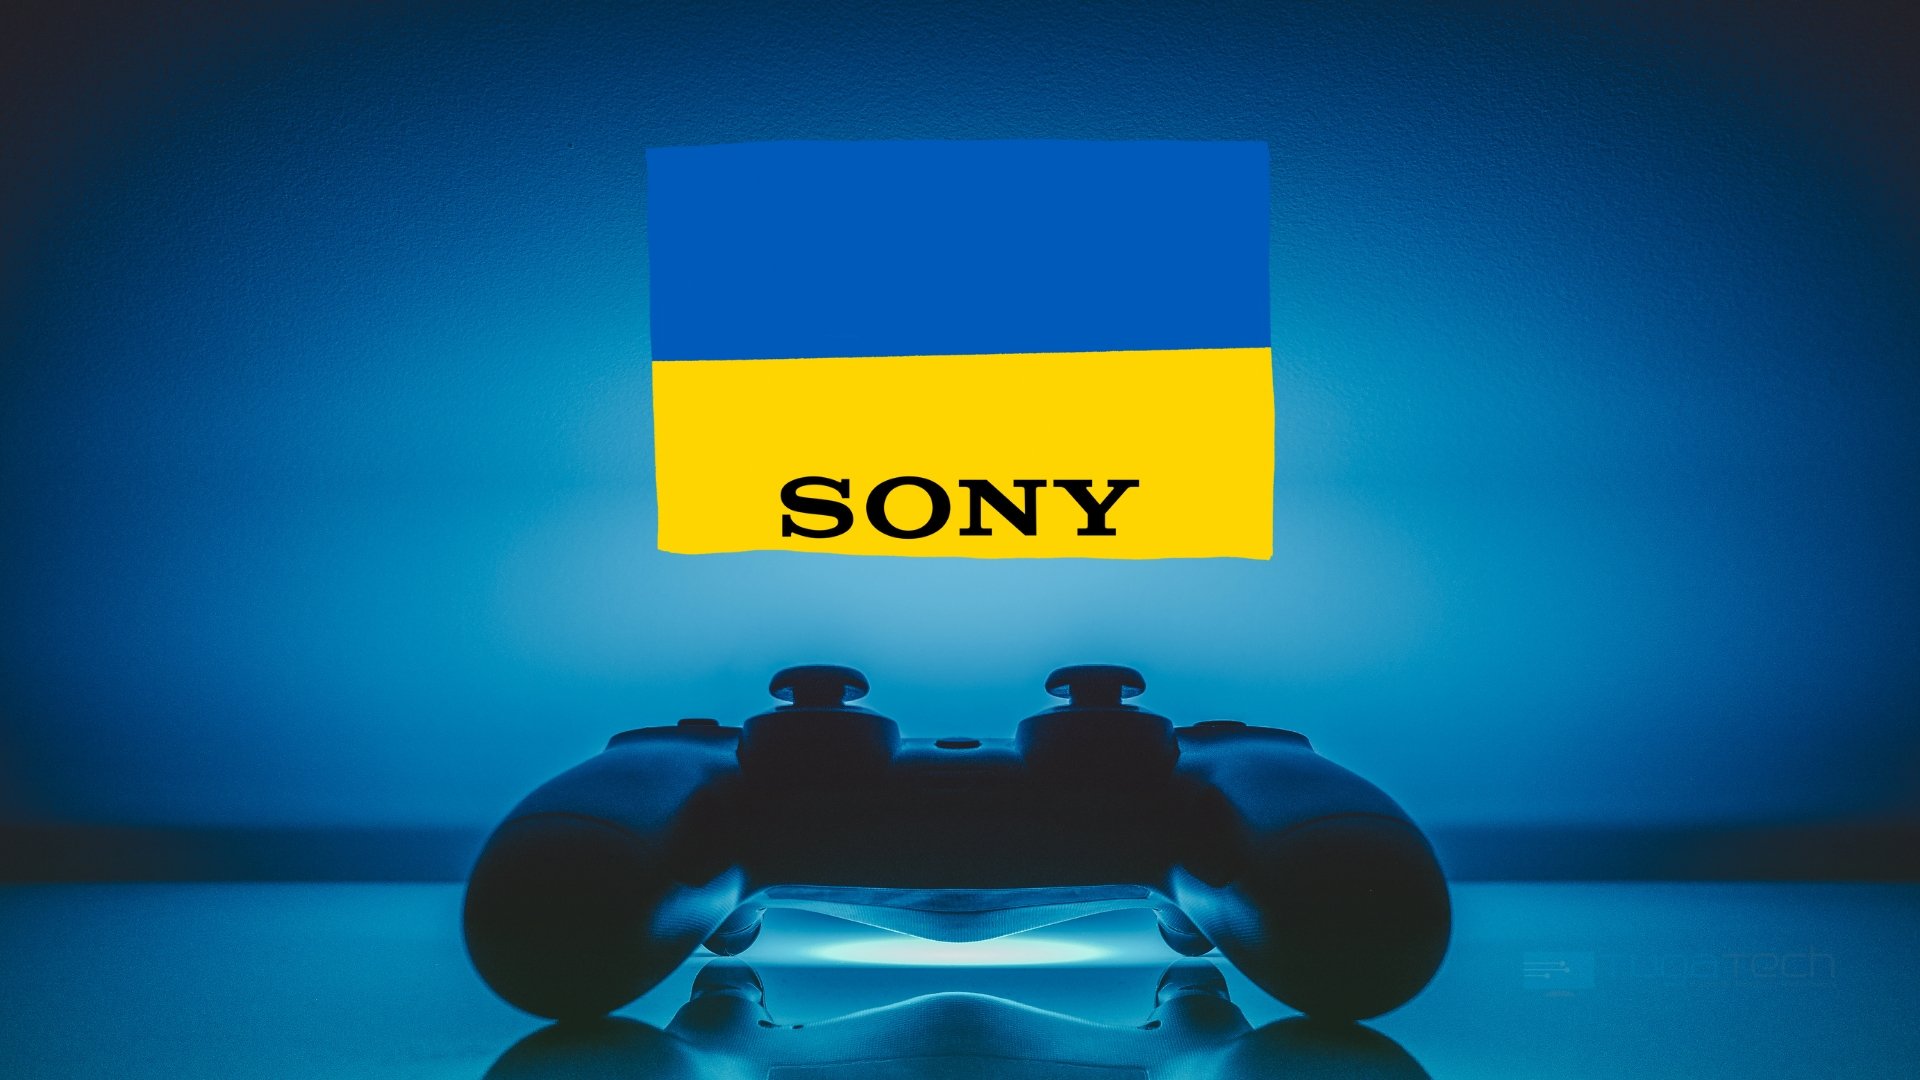 Sony comando sobre a bandeira da Ucrânia